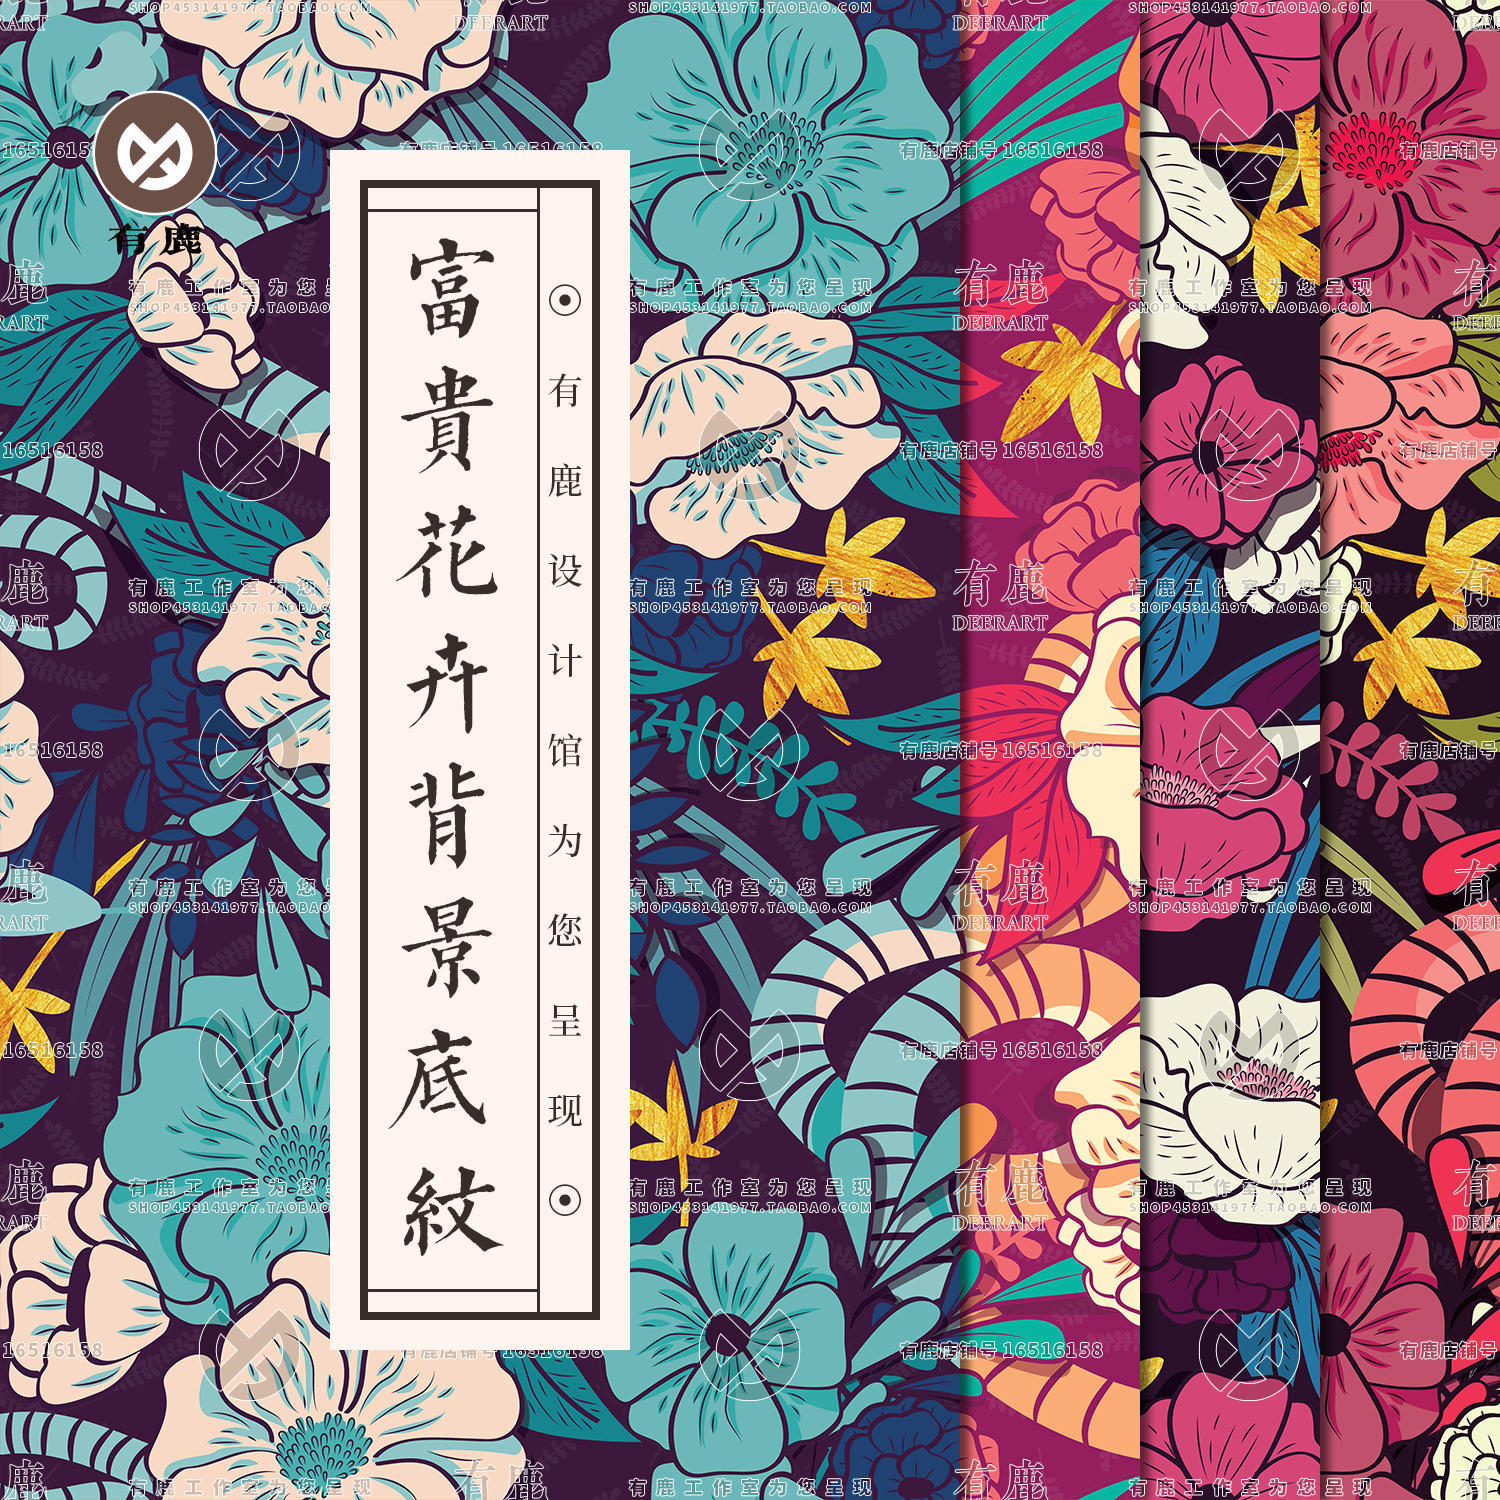 丛林花卉花朵款式印花布料图案纹样底纹纹理背景图片矢量素材设计